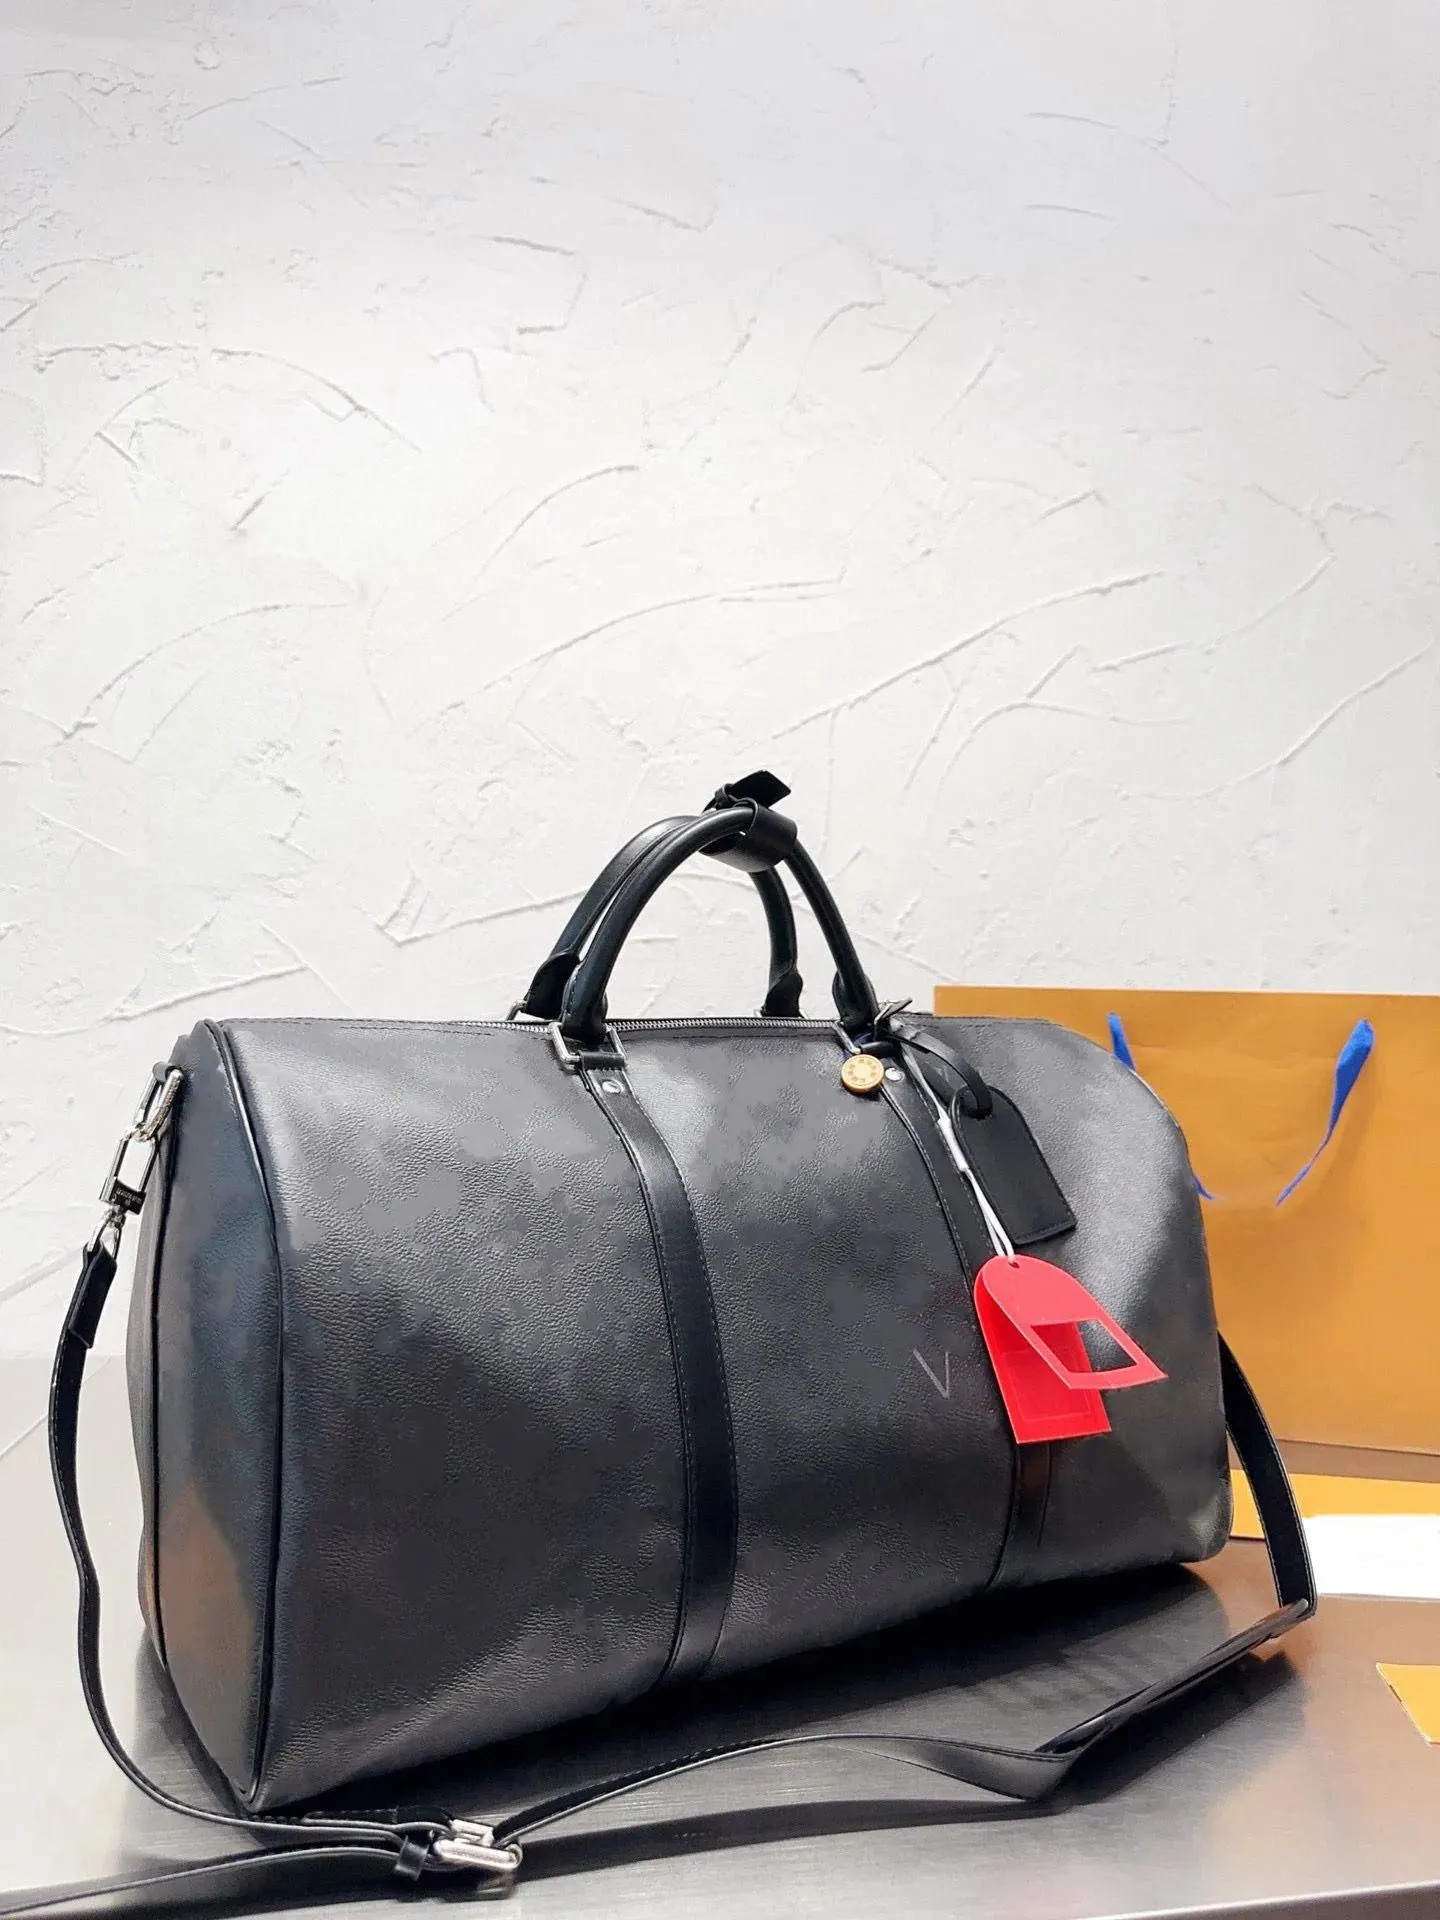 Designer Bag Duffle Bag Crossbody Bag stor kapacitet Rese påse med hänglås Flexibel Hållbar All Your Need Perfect Bag för Business Trip